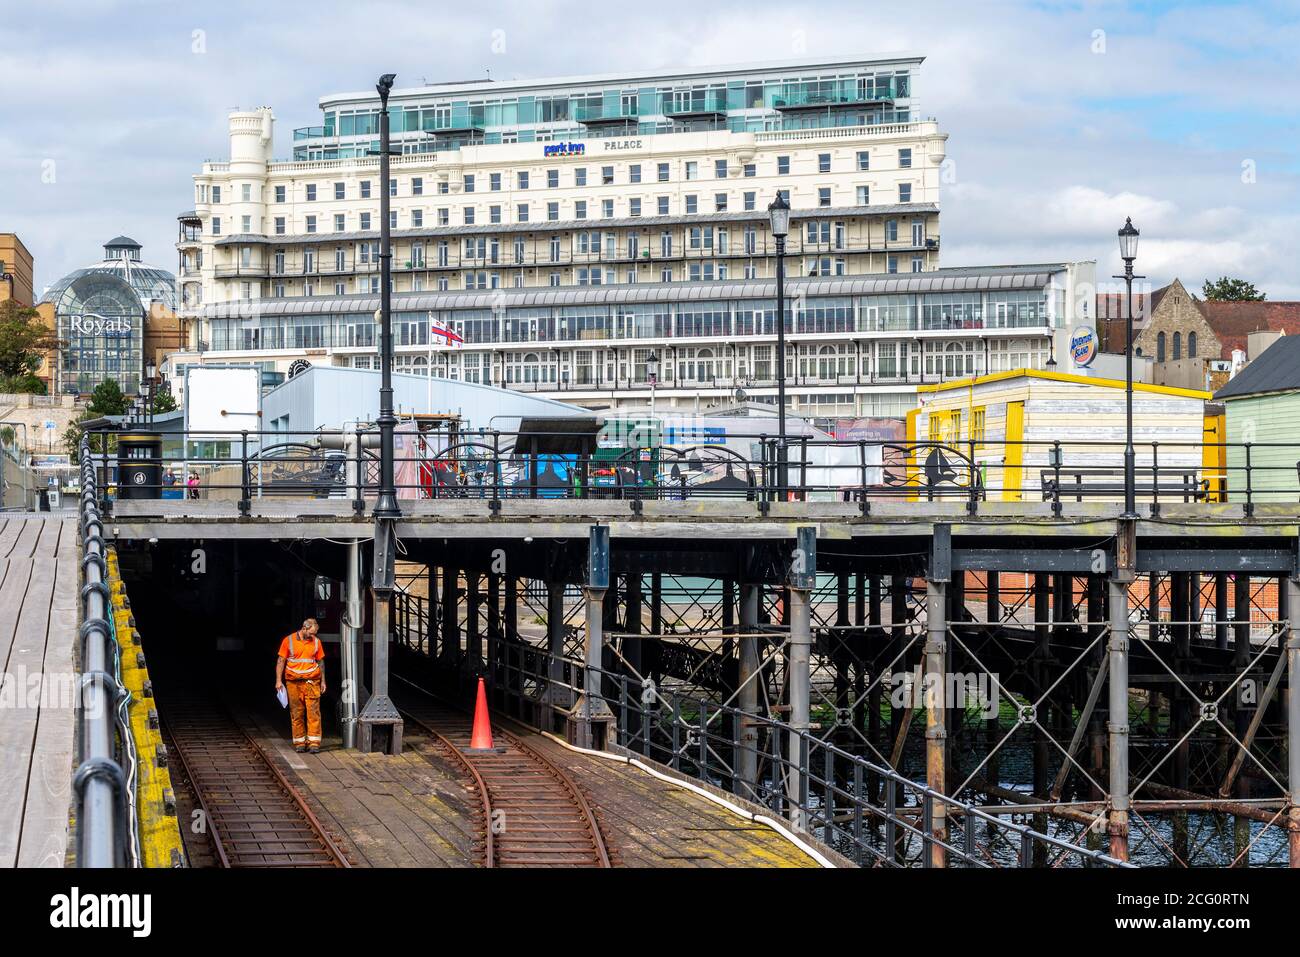 Pier Bahnhof Anfahrt auf Southend Pier, Southend on Sea, Essex, Großbritannien. Arbeiter auf dem Bahndeck. Wartung. Struktur der Eisenhütte. Eiserne Beine Stockfoto